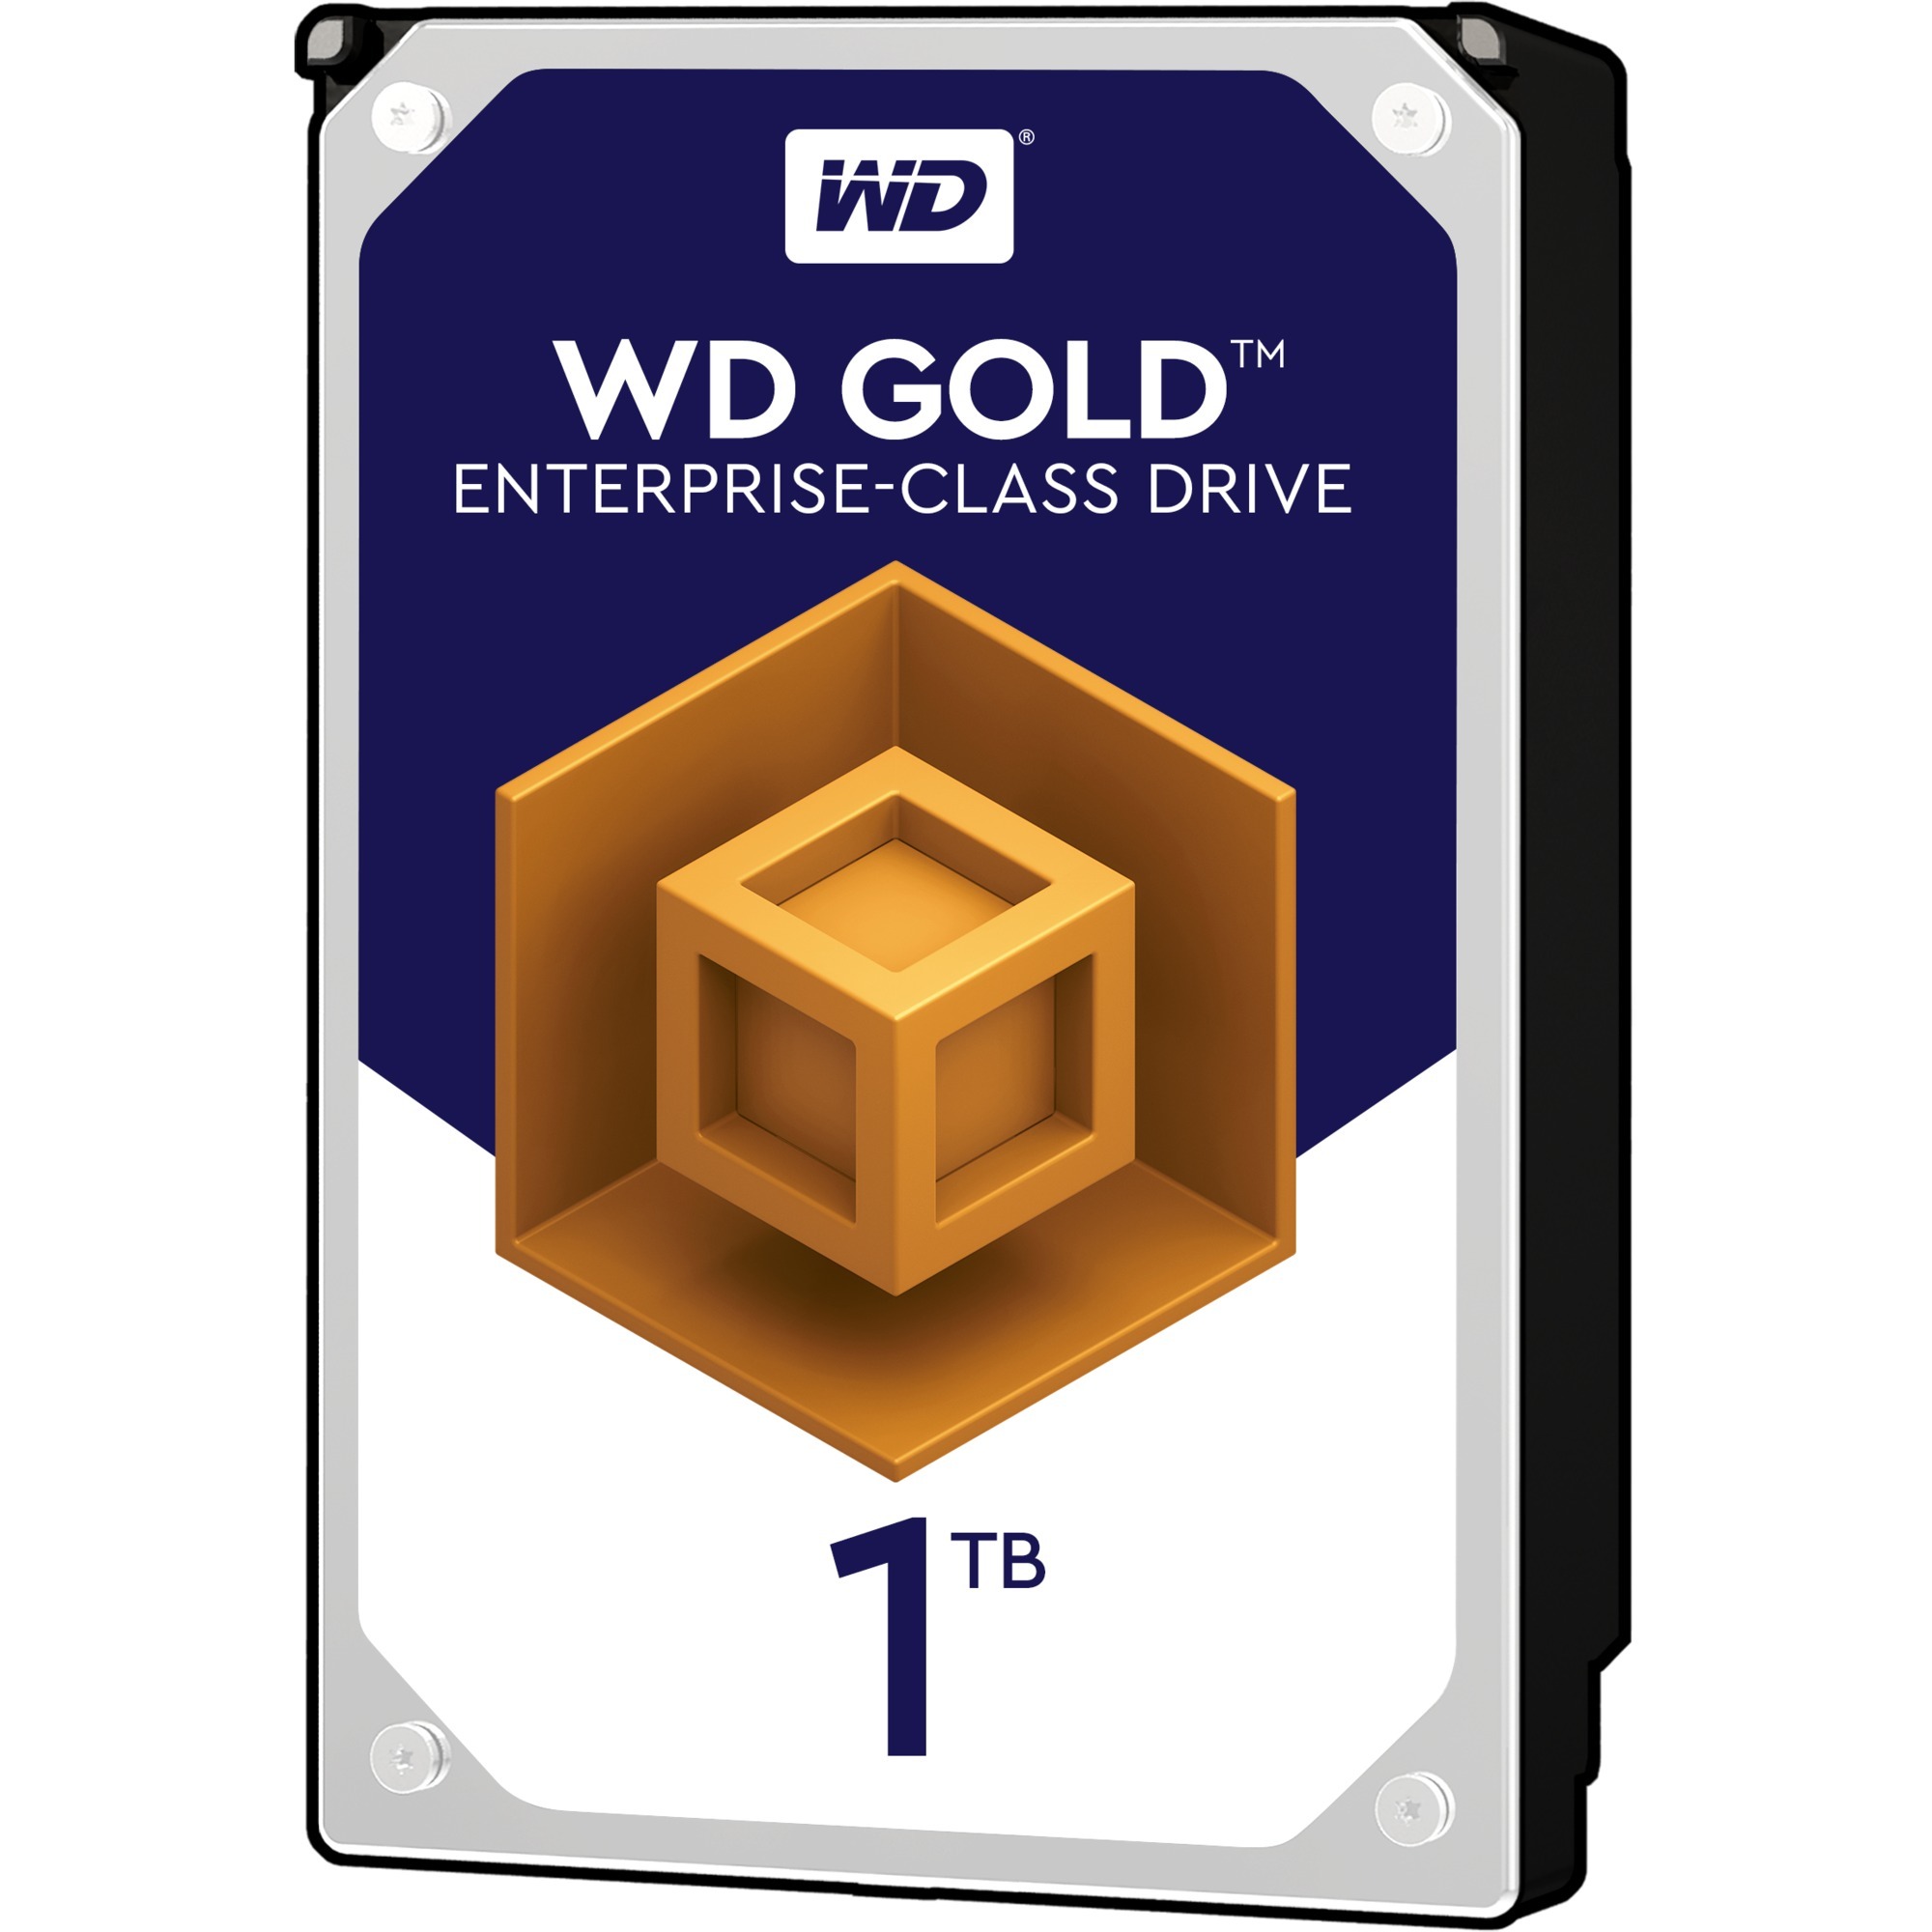 Image of Alternate - Gold Enterprise Class 1 TB, Festplatte online einkaufen bei Alternate